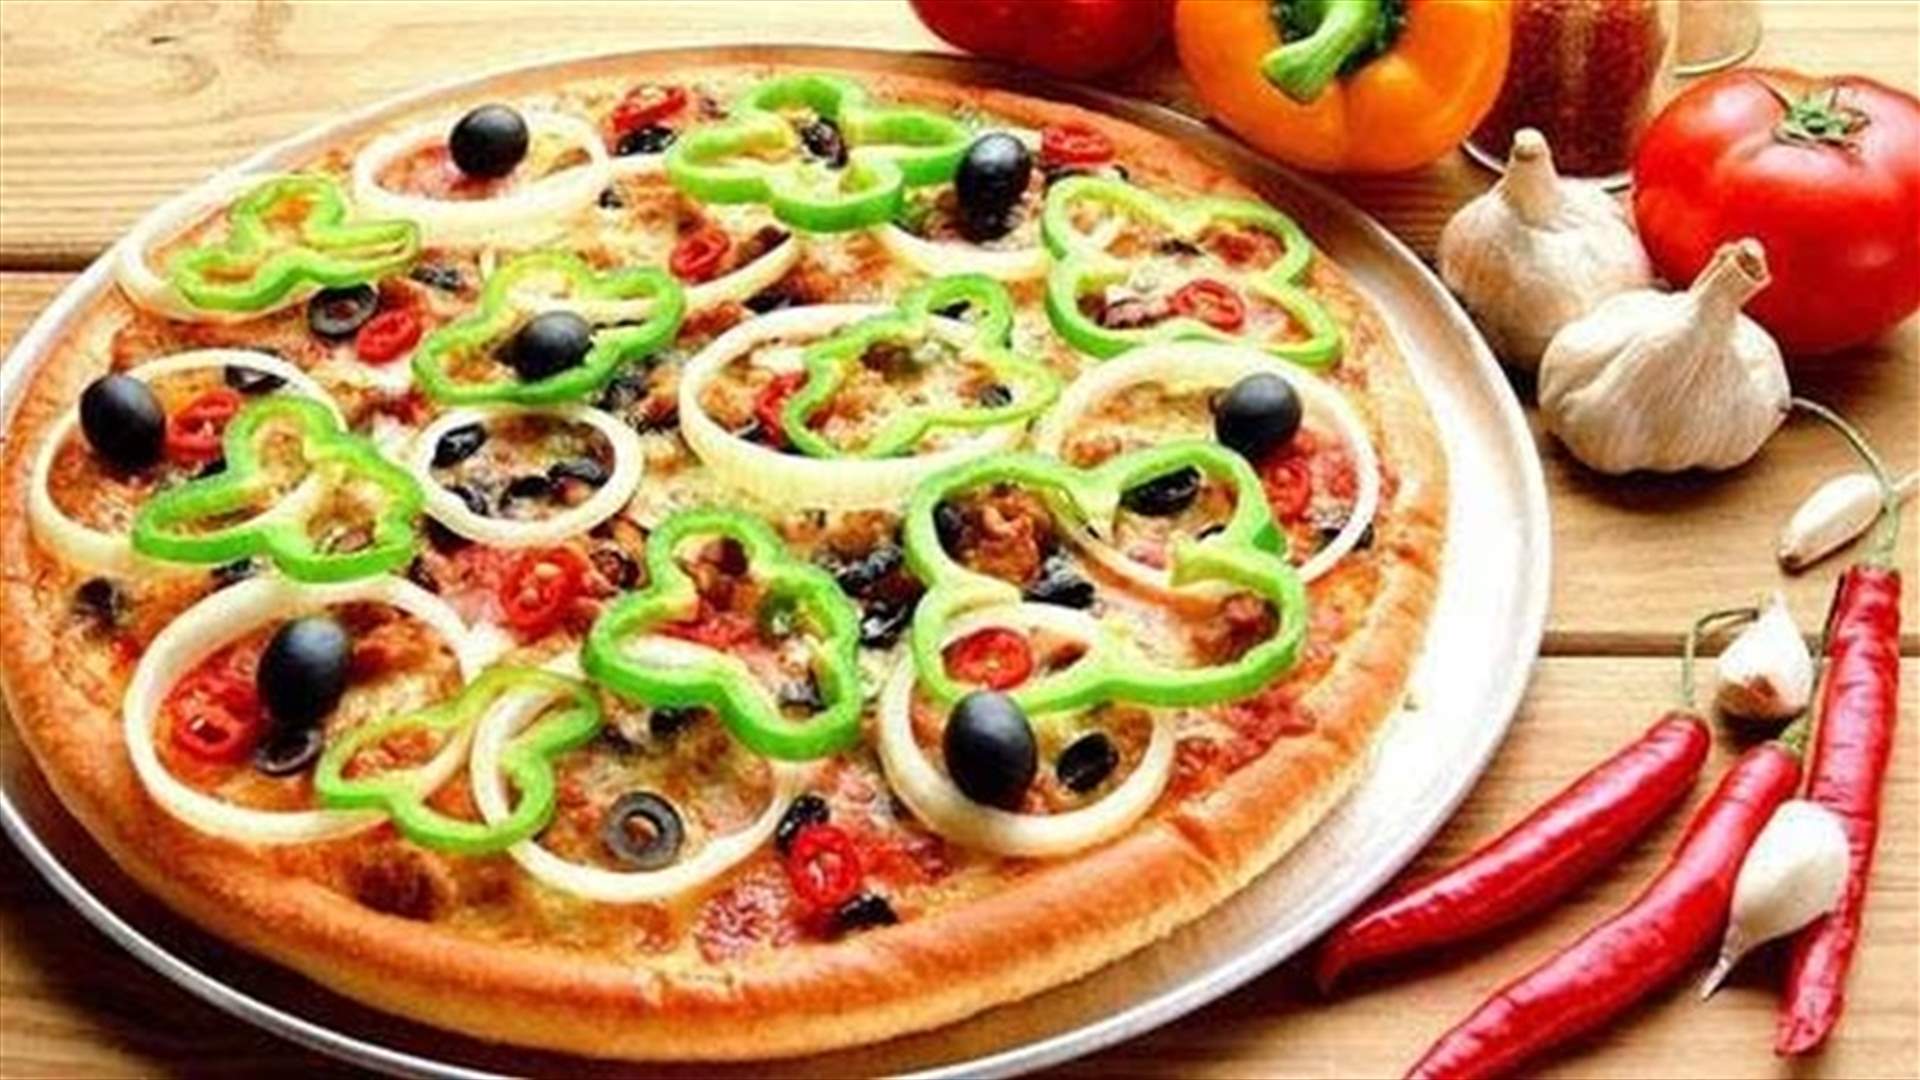 في بداية الصوم... إليكم وصفة بيتزا صيامي